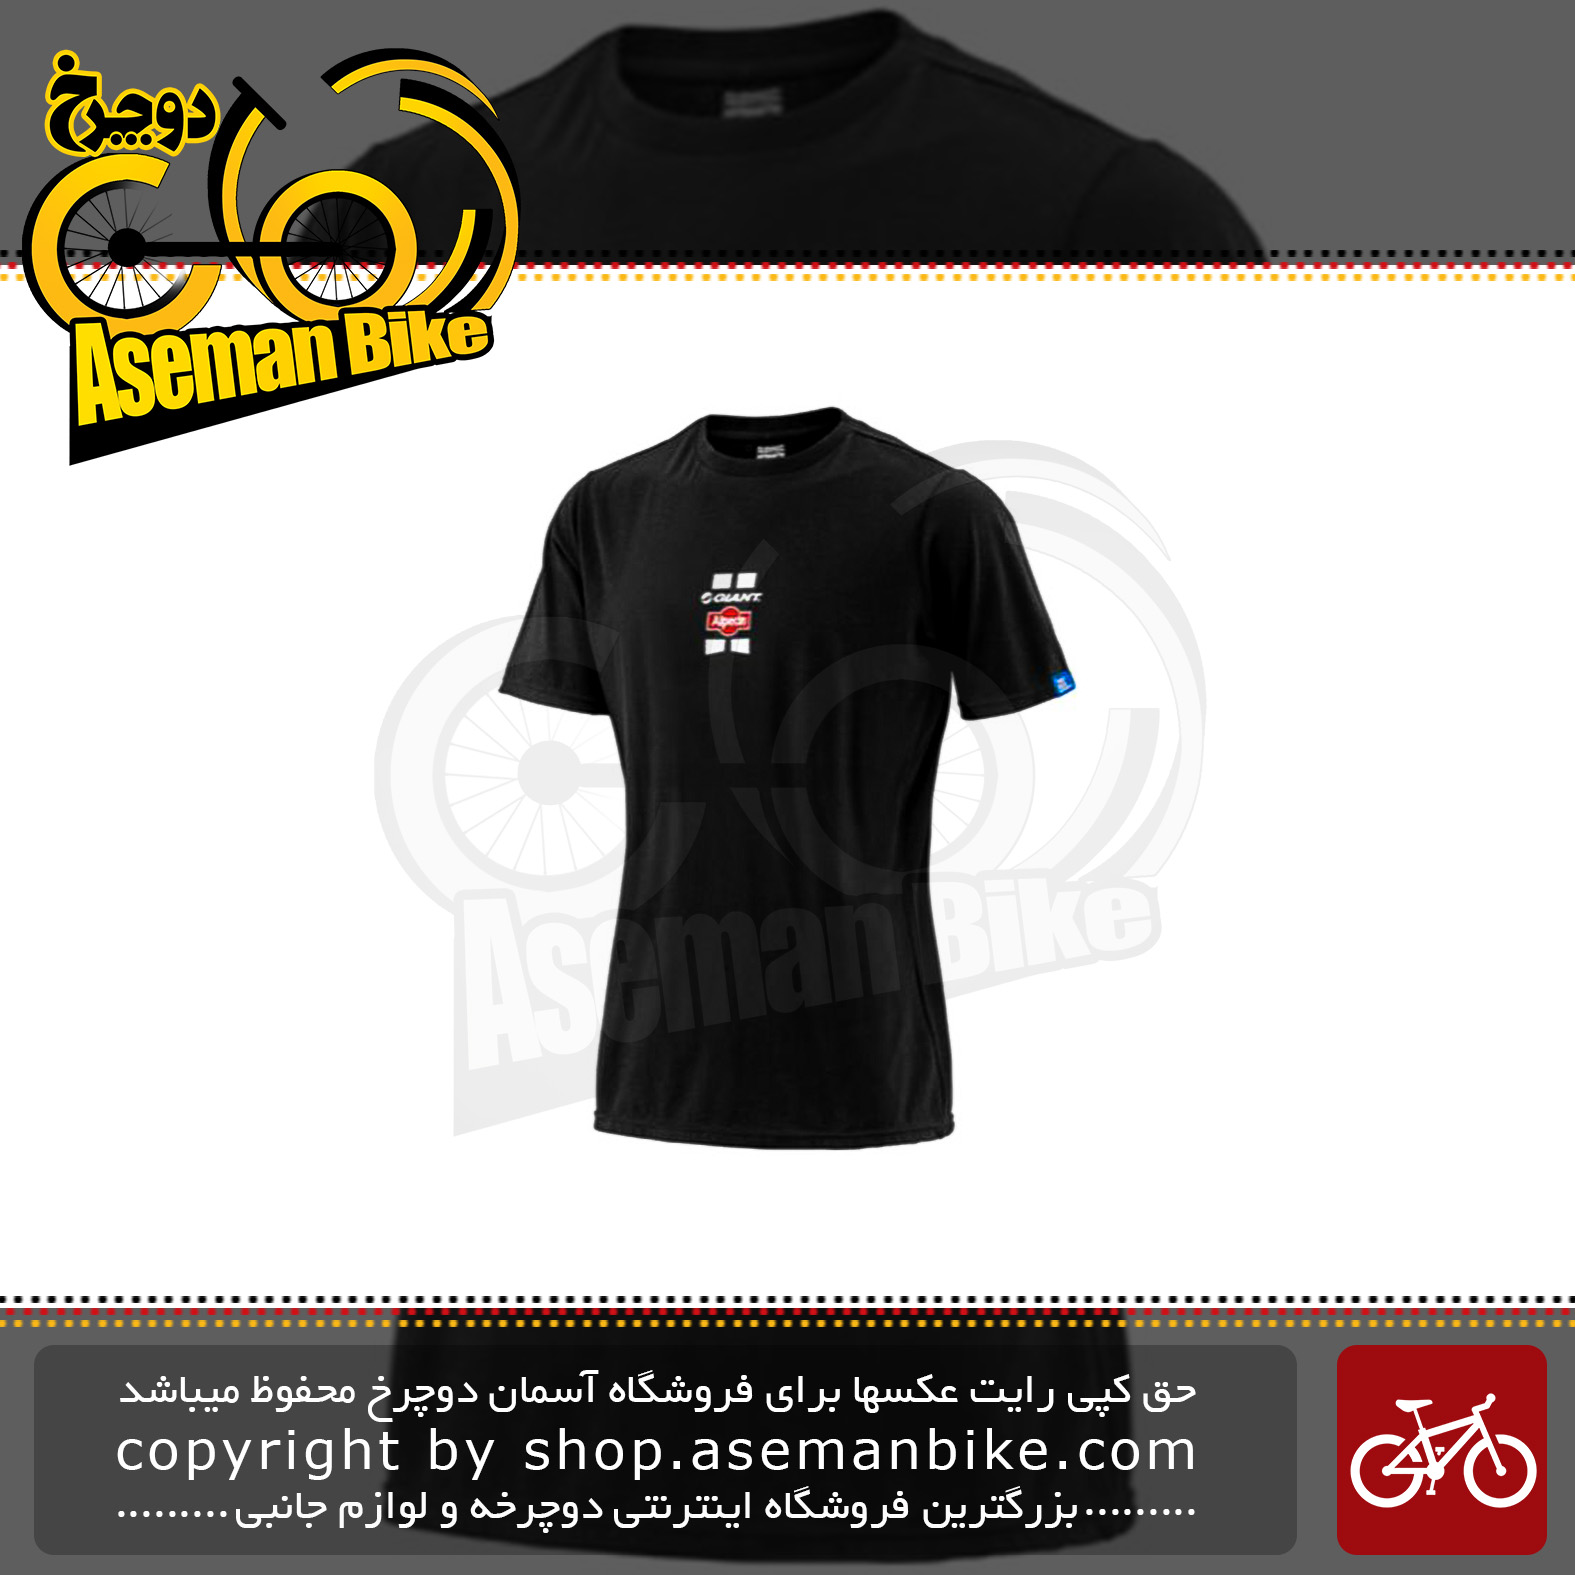 لباس دوچرخه سواری تی شرت جاینت مدل آلپسین تیم آستین کوتاه مشکی سایز ایکس لارج Bicycle Team Giant Alpecin Tee short Sleeve jersey Black XL